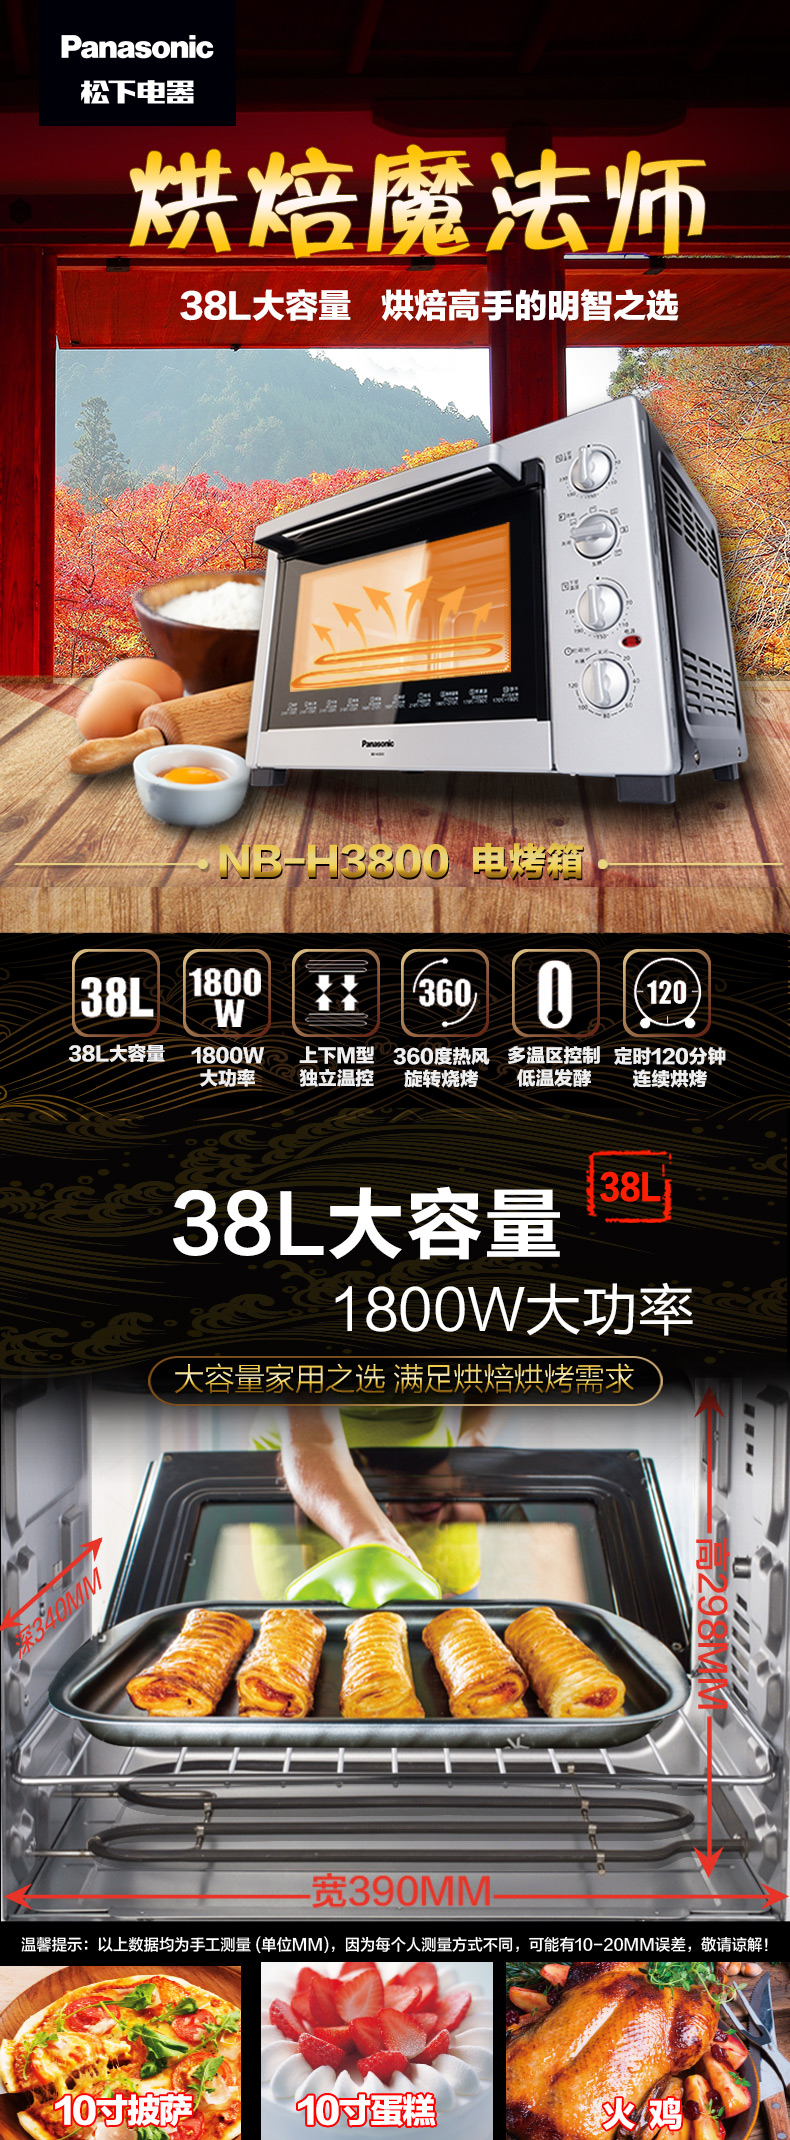 松下(Panasonic) NB-H3800 专业家用烤箱